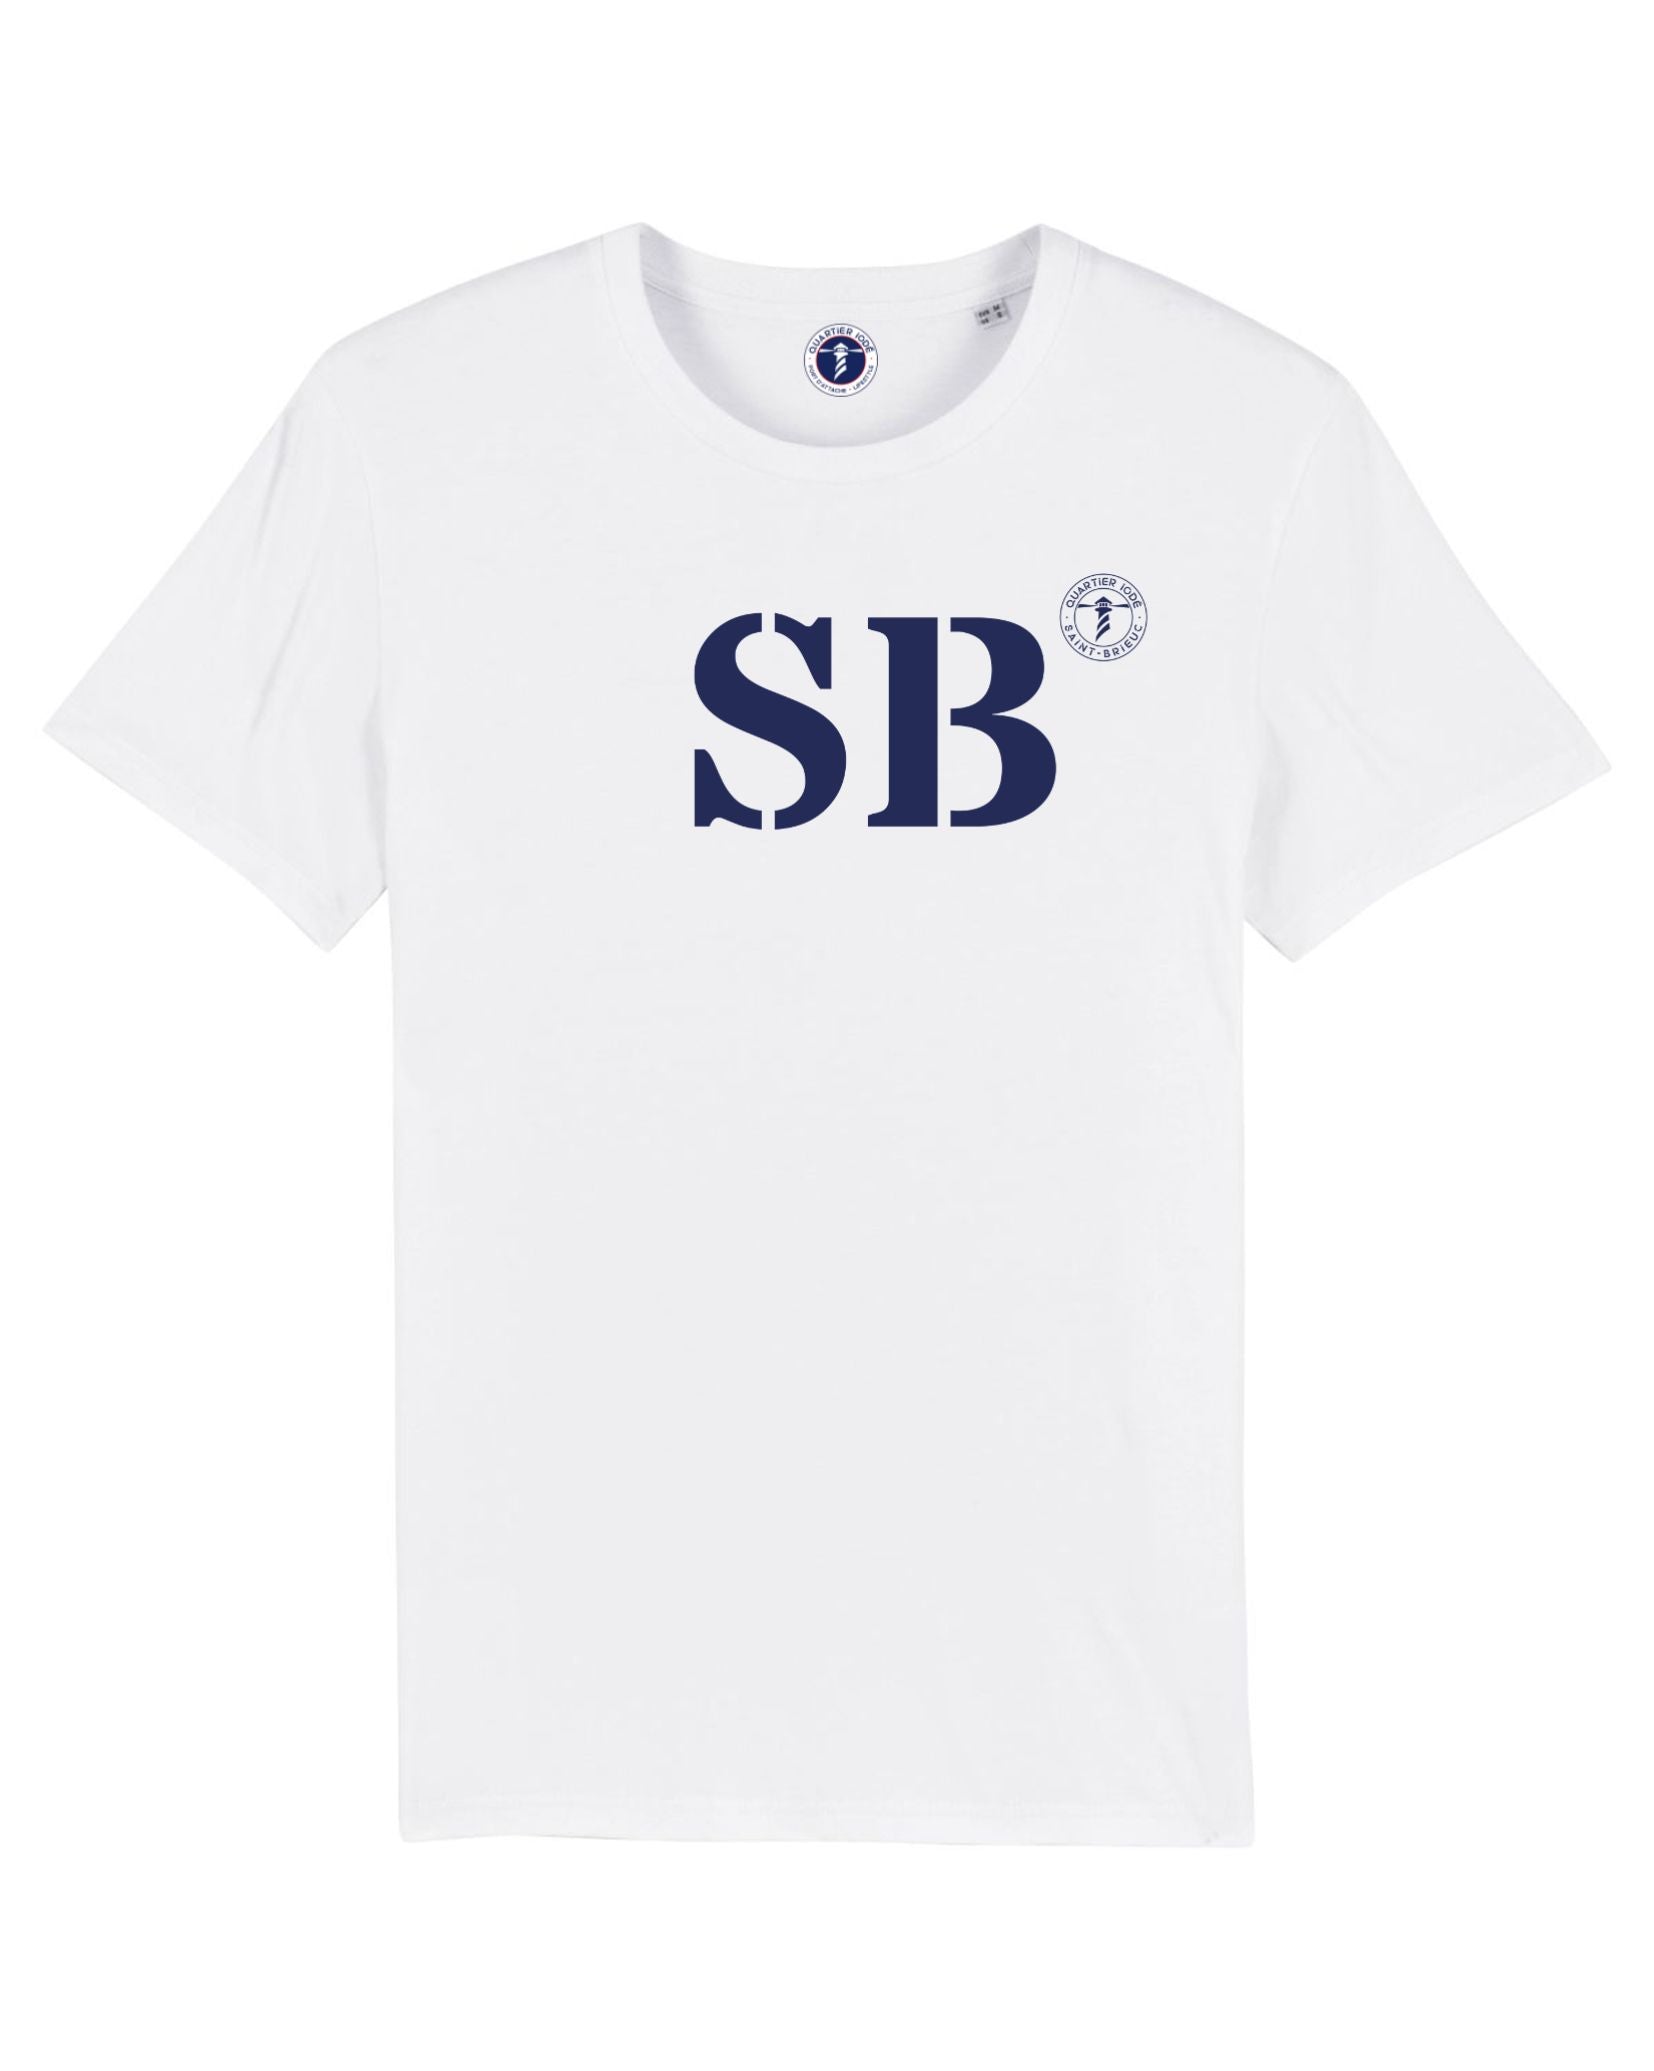 SB pour Saint Brieuc, Tshirt blanc coton bio, intemporel et durable par Quartier Iodé, marque de mode bretonne. 